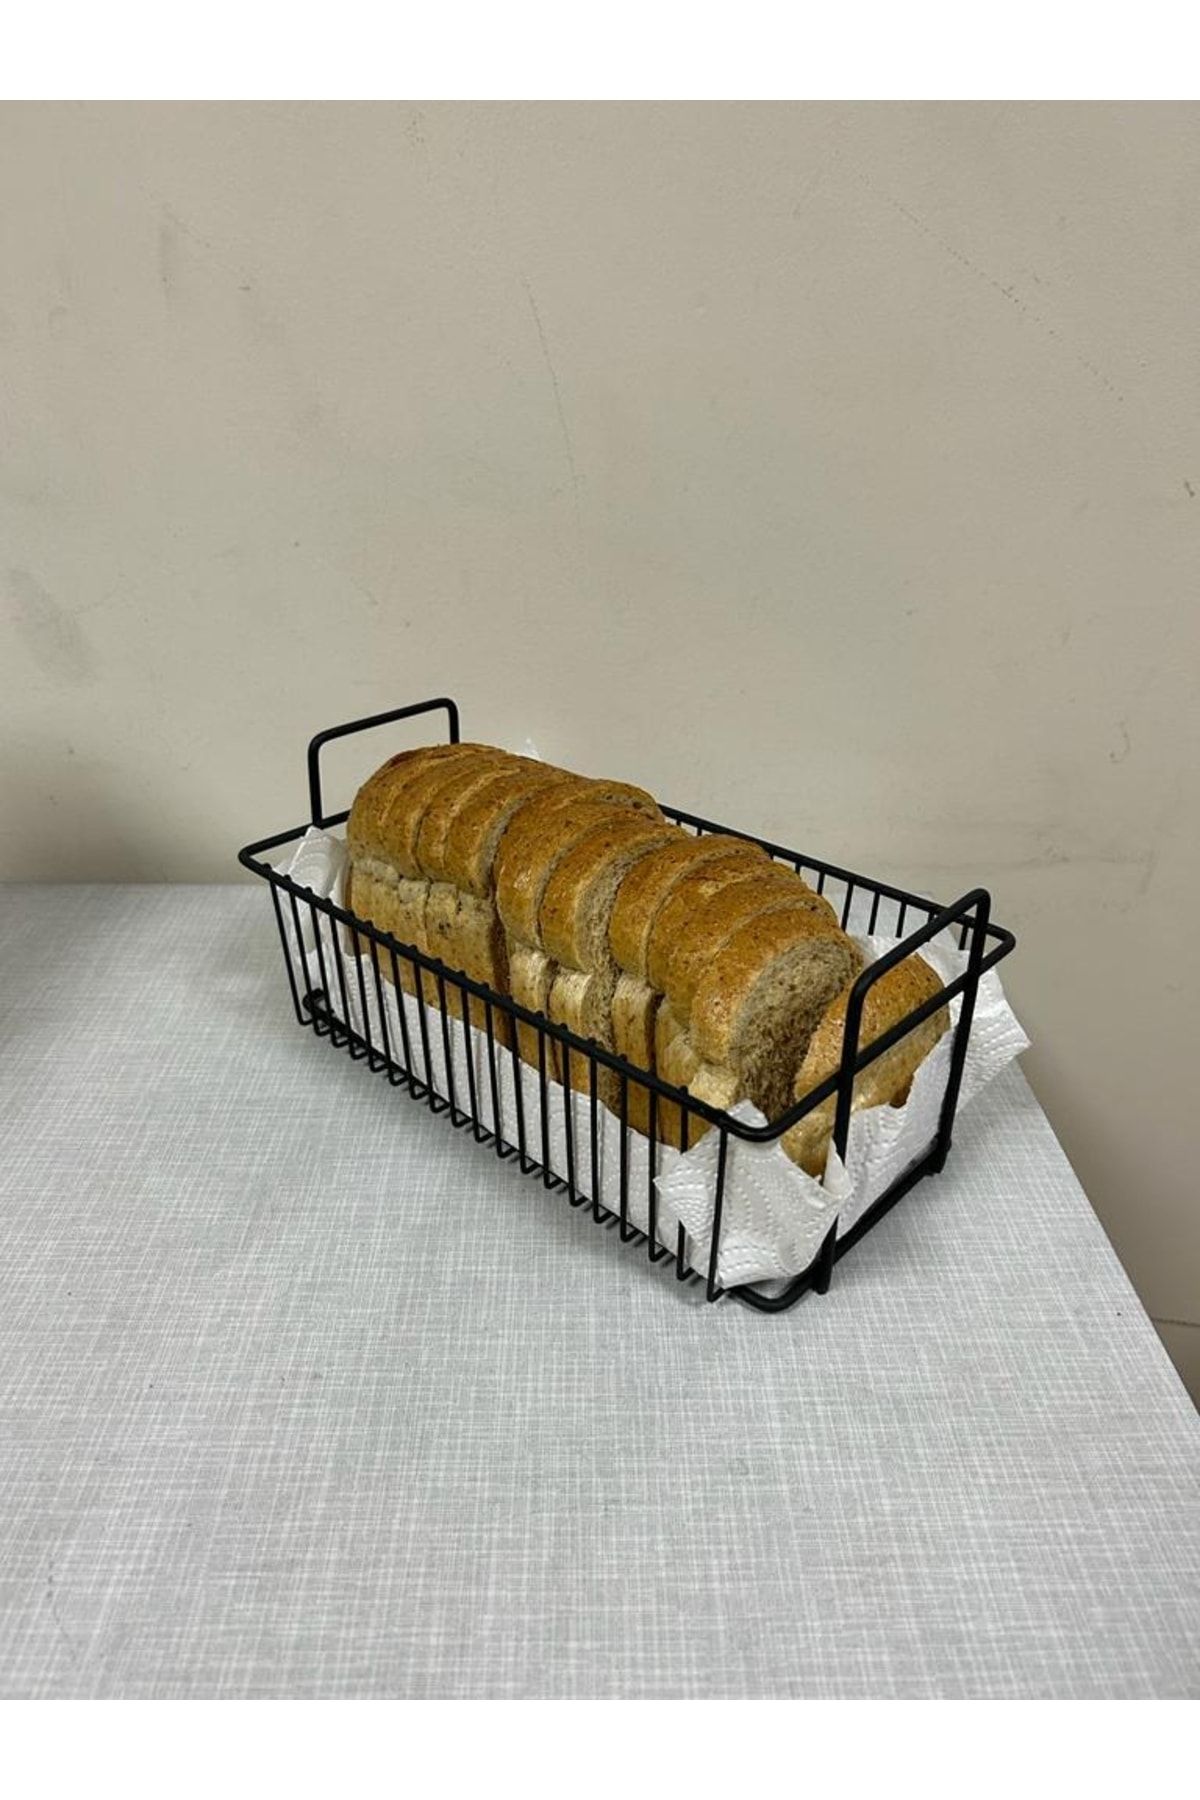 nevhas Metal Ekmek Sepeti,dikdörtgen, Tutacaklı